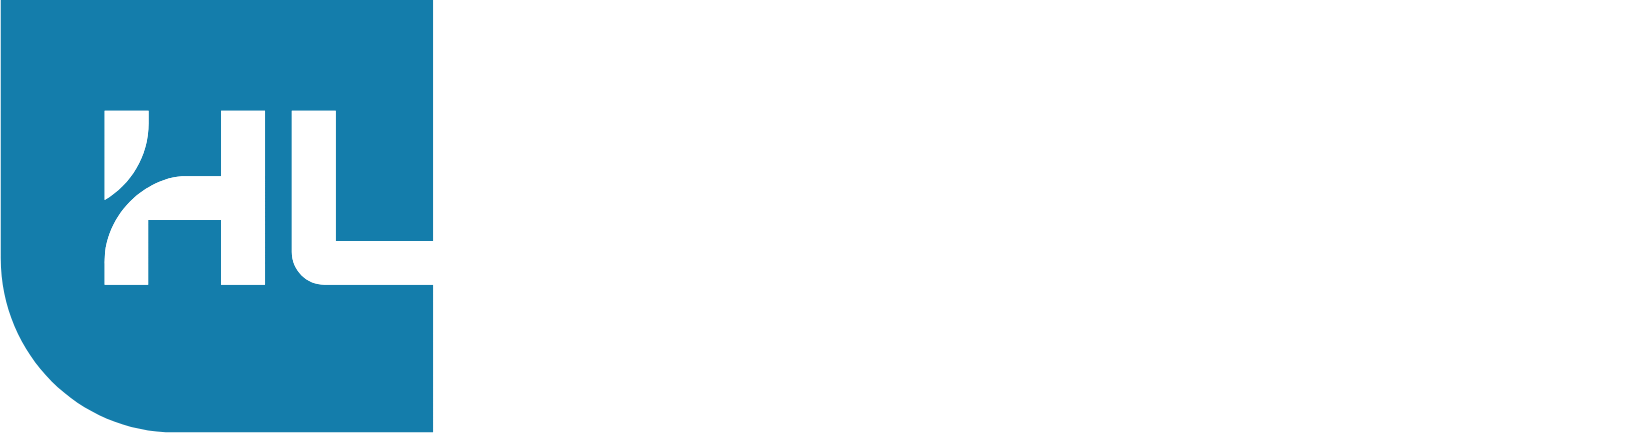 Hamilton Lane logo large for dark backgrounds (transparent PNG)